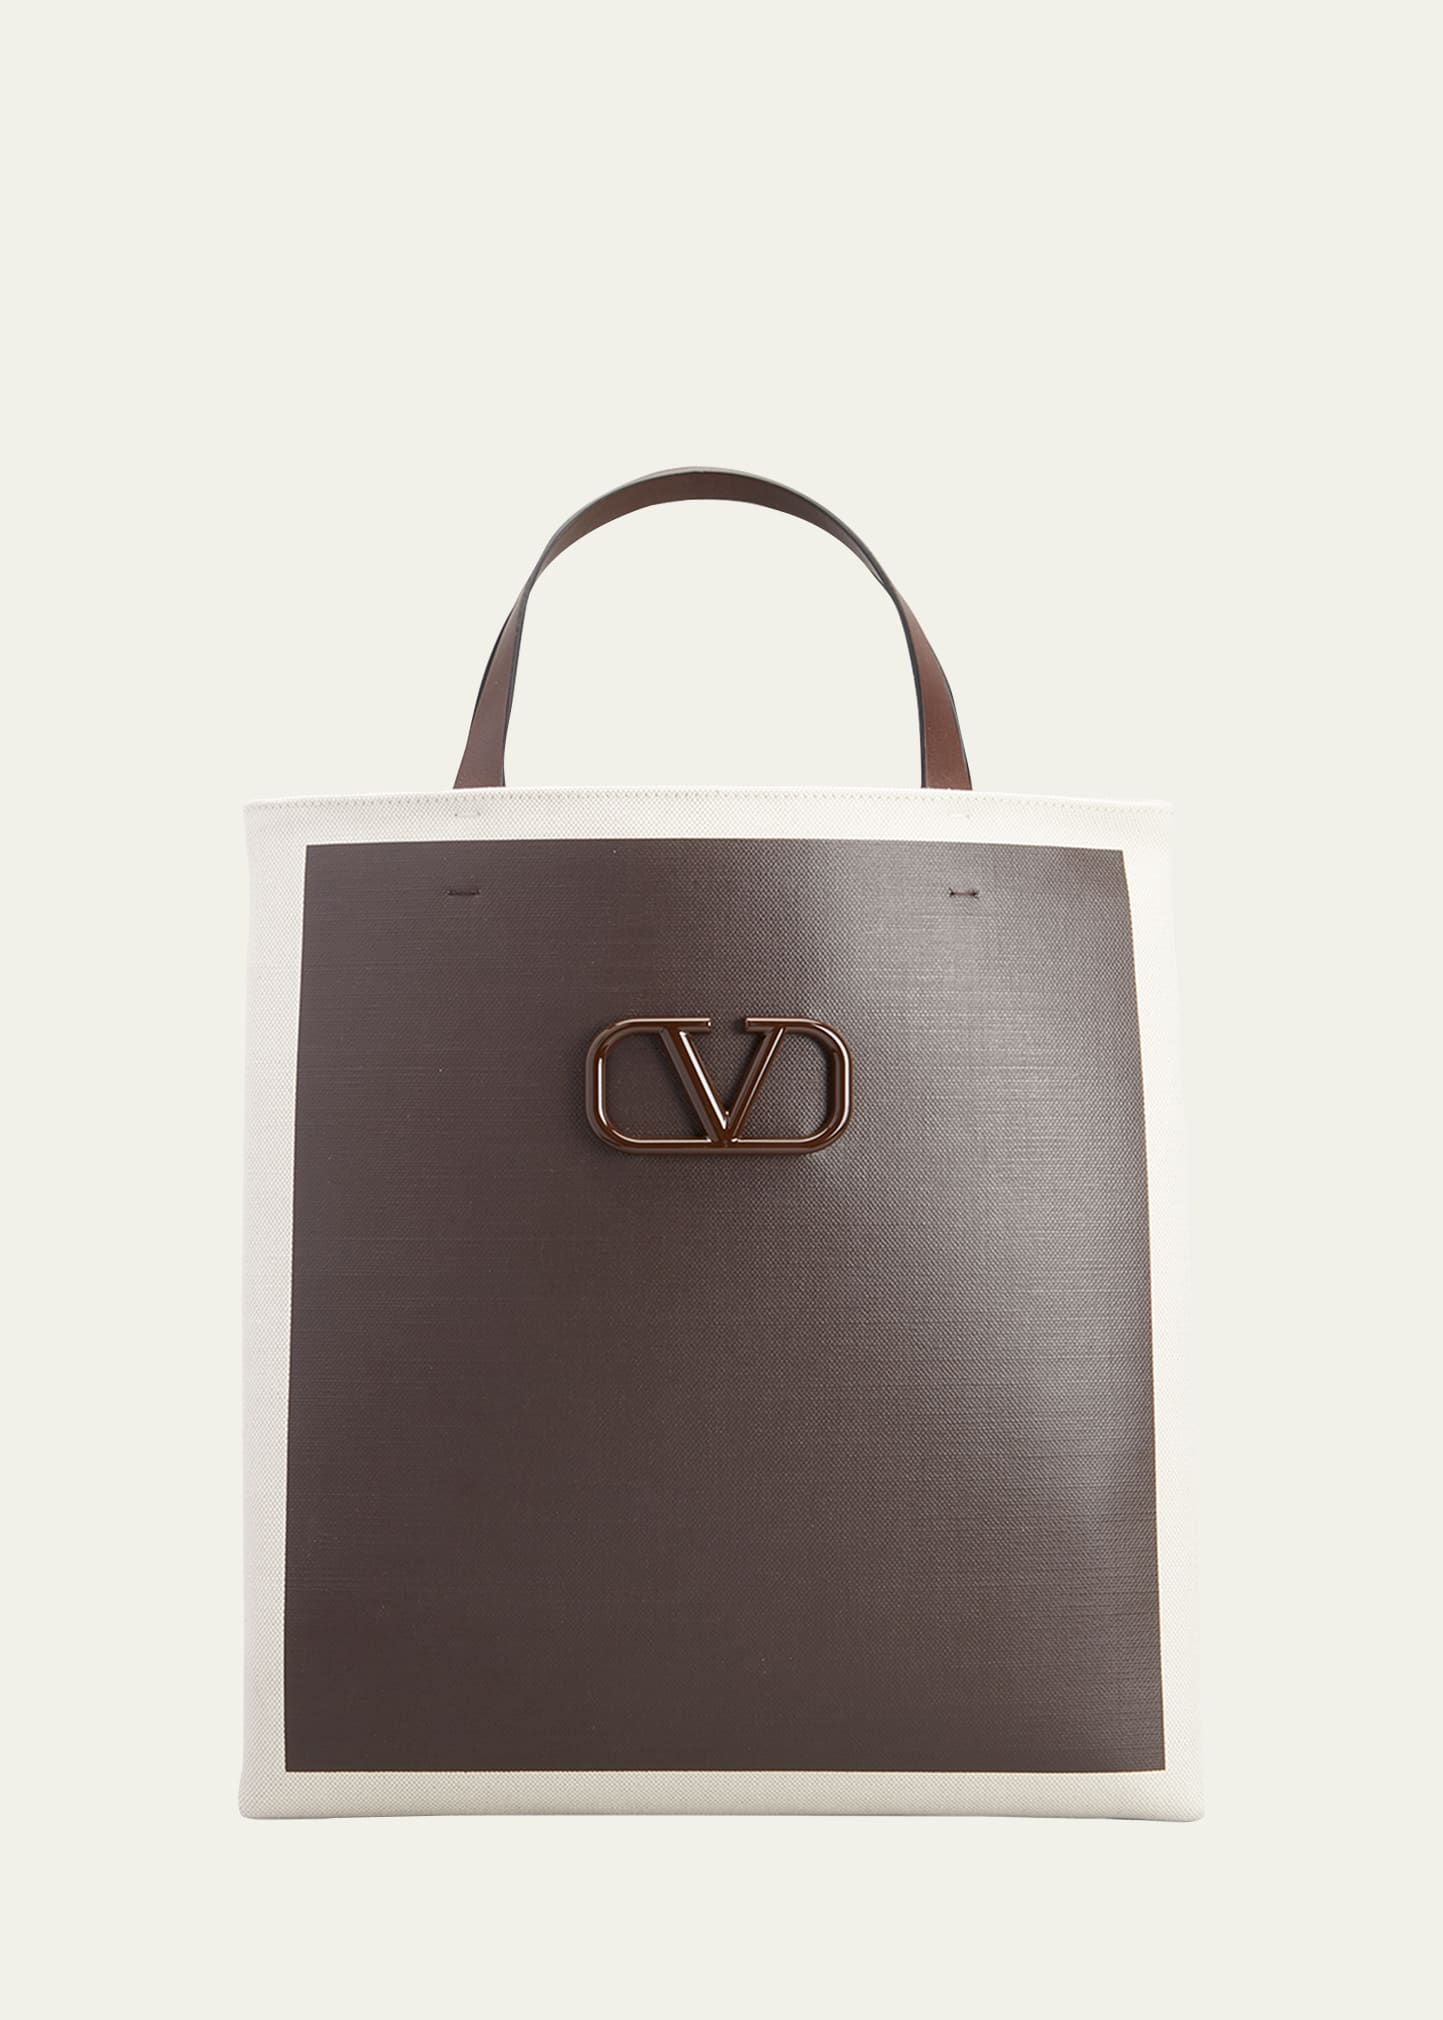 Uafhængighed eksplicit Goneryl Valentino Garavani Men's V-logo Bicolor Canvas Tote Bag In Brown/tan |  ModeSens